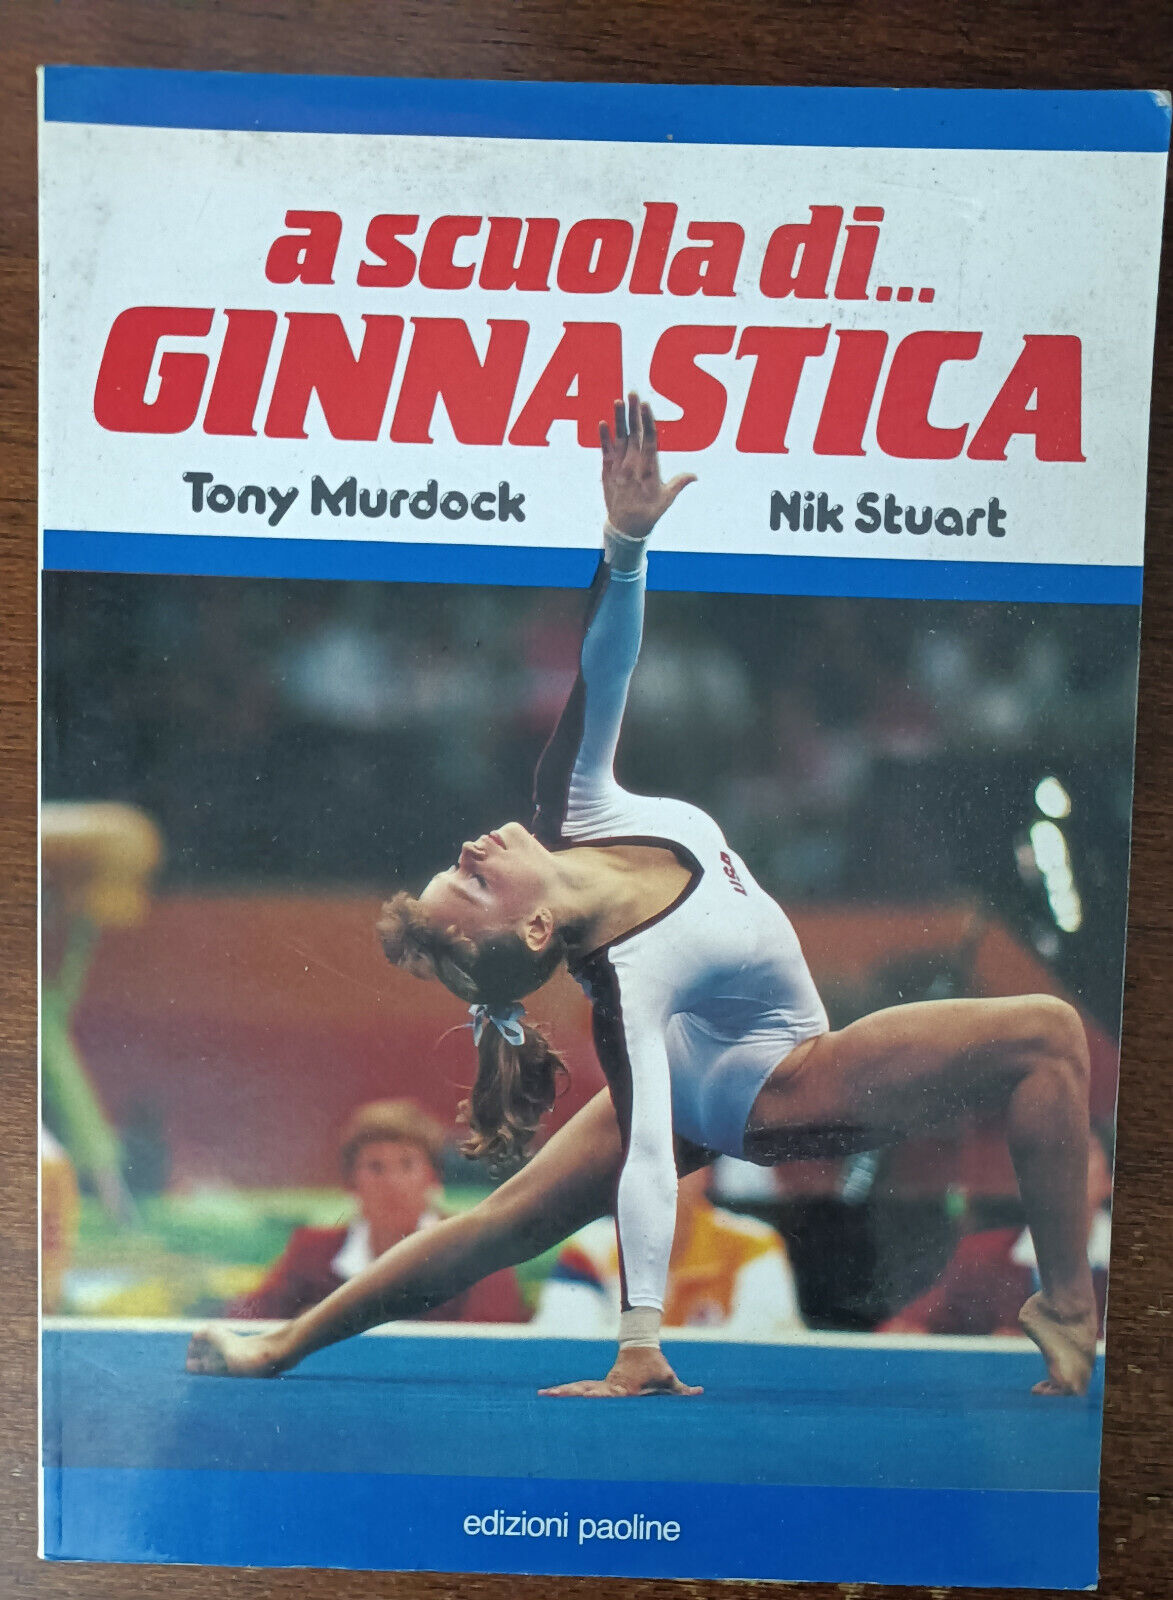 A scuola di ginnastica - Tony Murdock, Nick Stuart - Edizioni paoline, 1993 - A libro usato